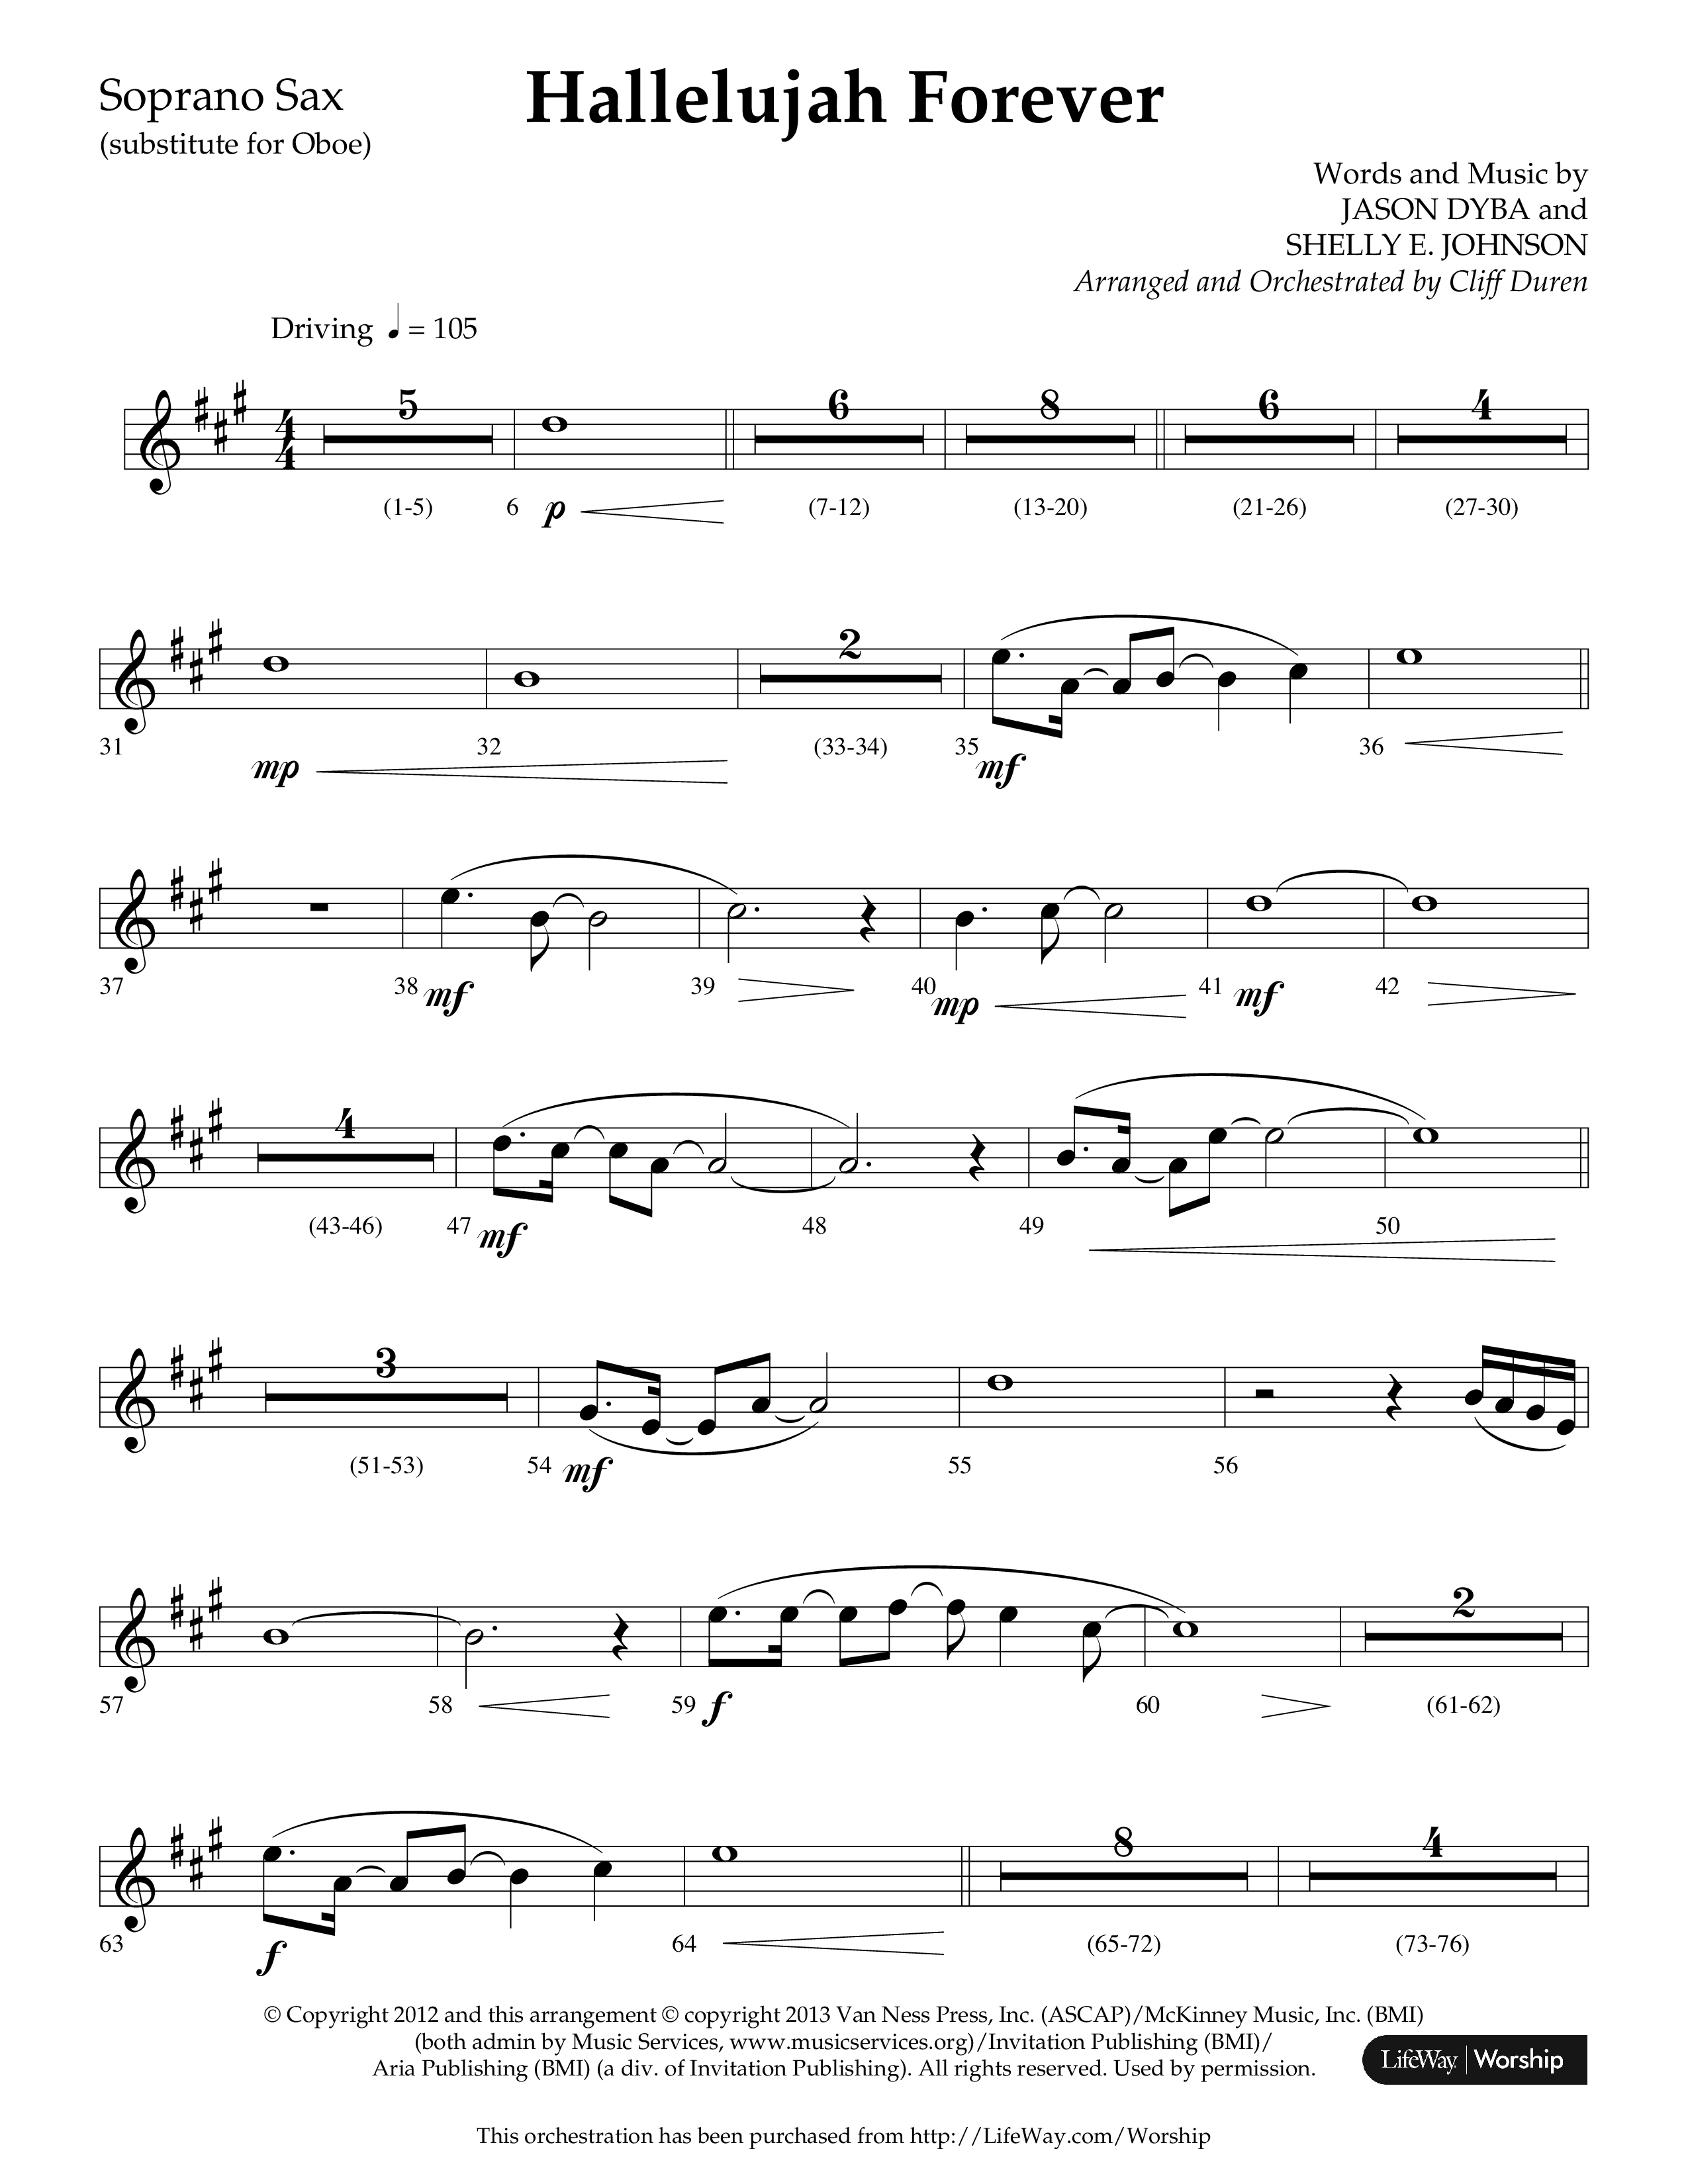 Hallelujah Forever (Choral Anthem SATB) Soprano Sax (Lifeway Choral / Arr. Cliff Duren)